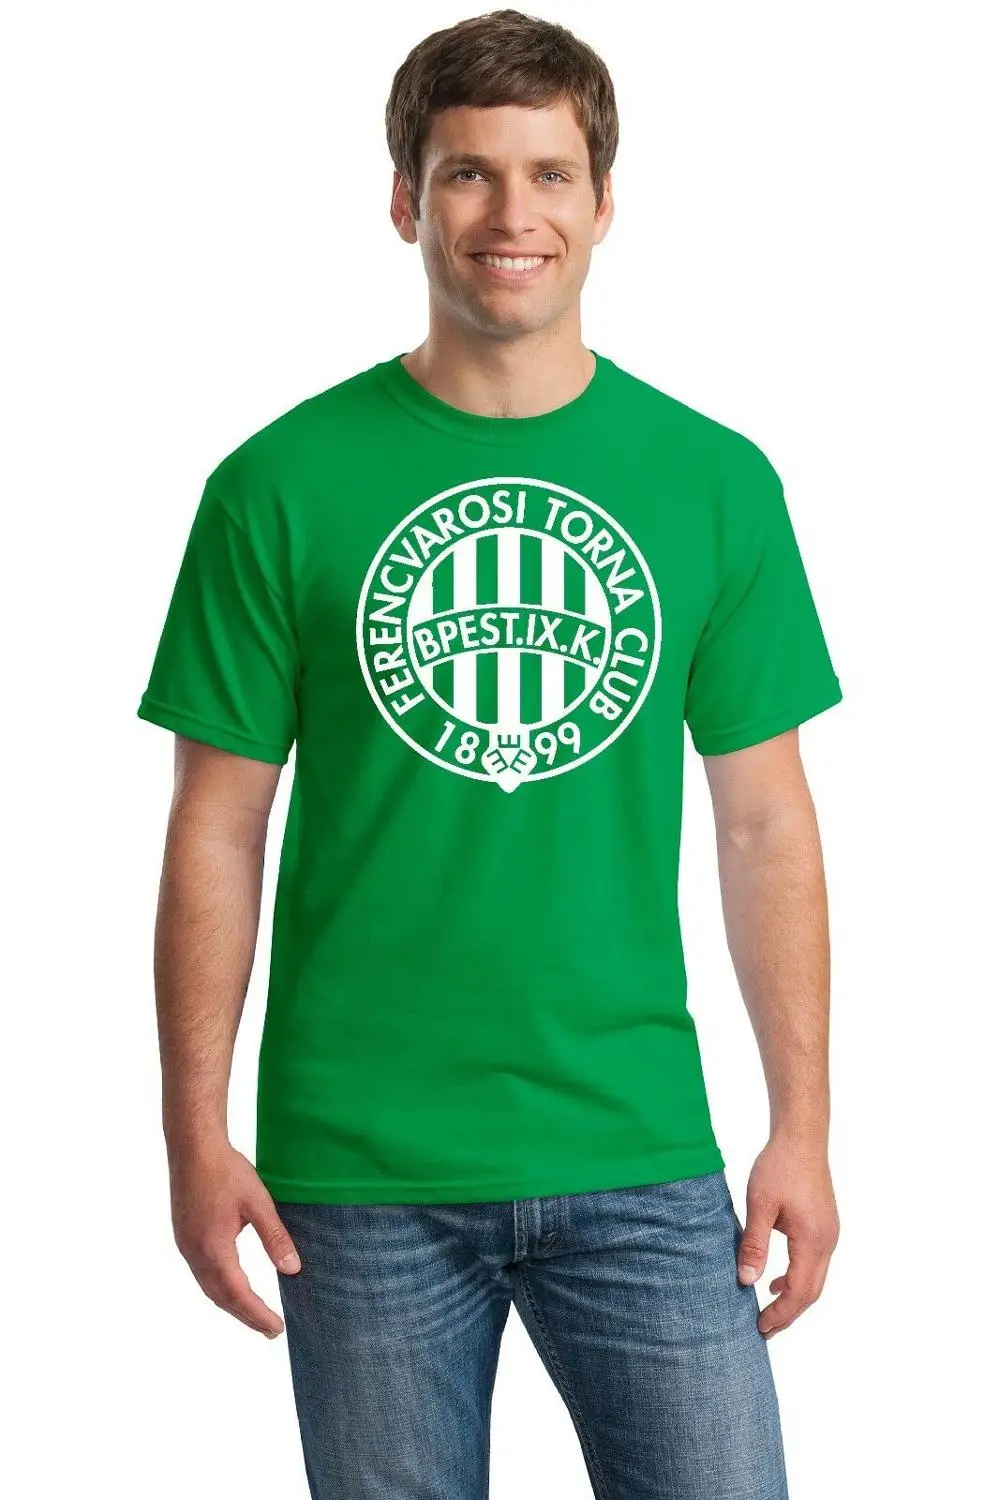 Ferencvaros Tc Budapest Hungary Ferencvaros футболка футбольная куртка мужские футболки мода Топ Футболка с круглым вырезом и принтом - Цвет: Зеленый